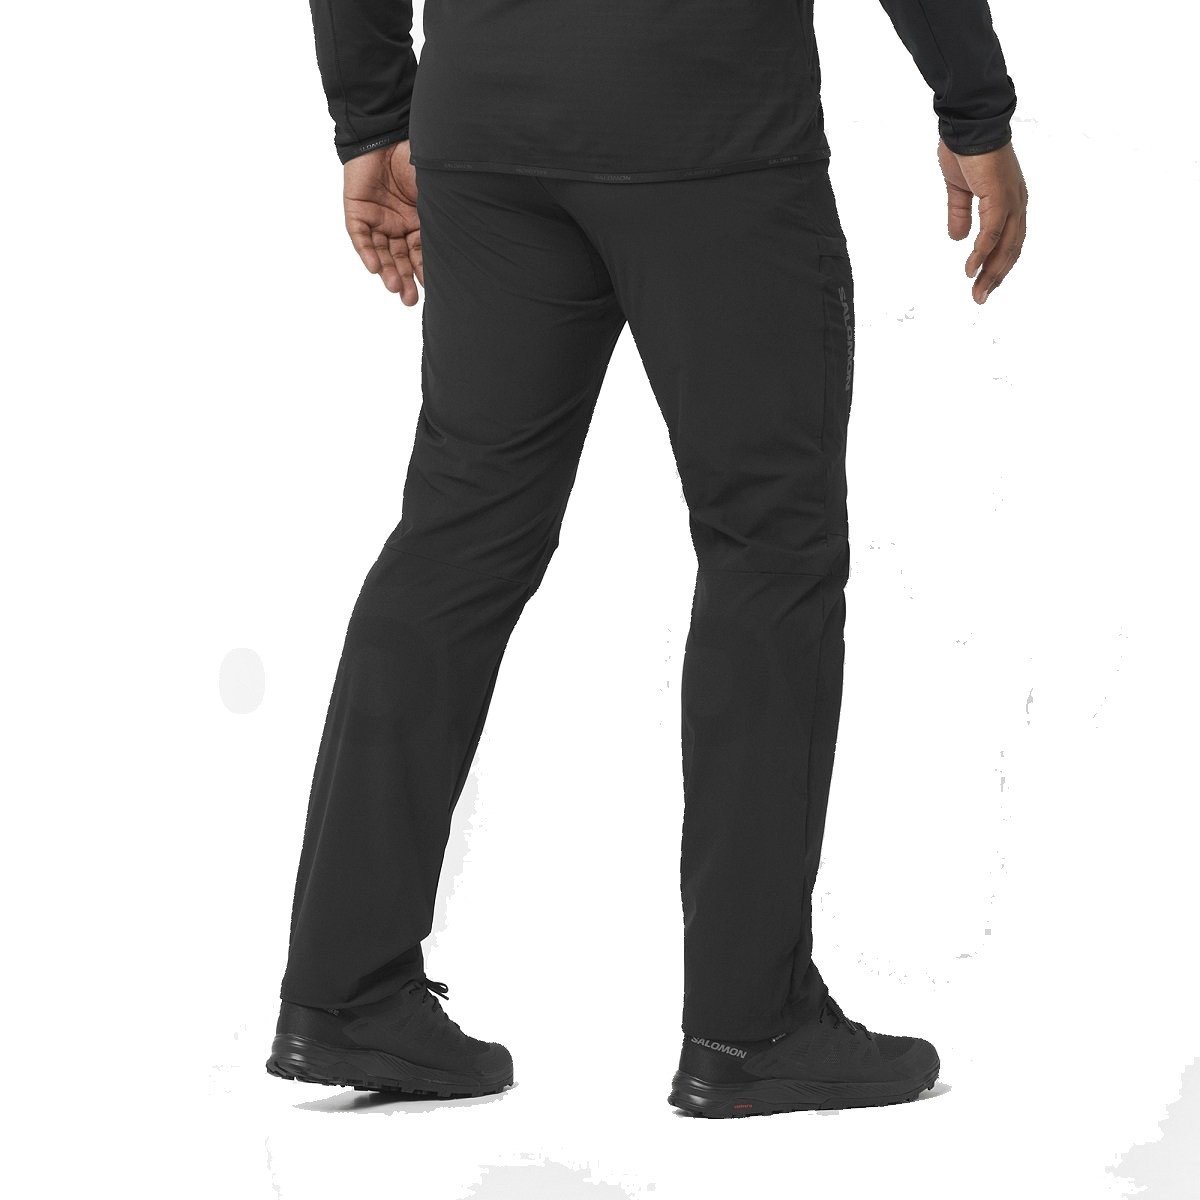 Salomon Wayfarer nohavice M - čierne (skrátená dĺžka)